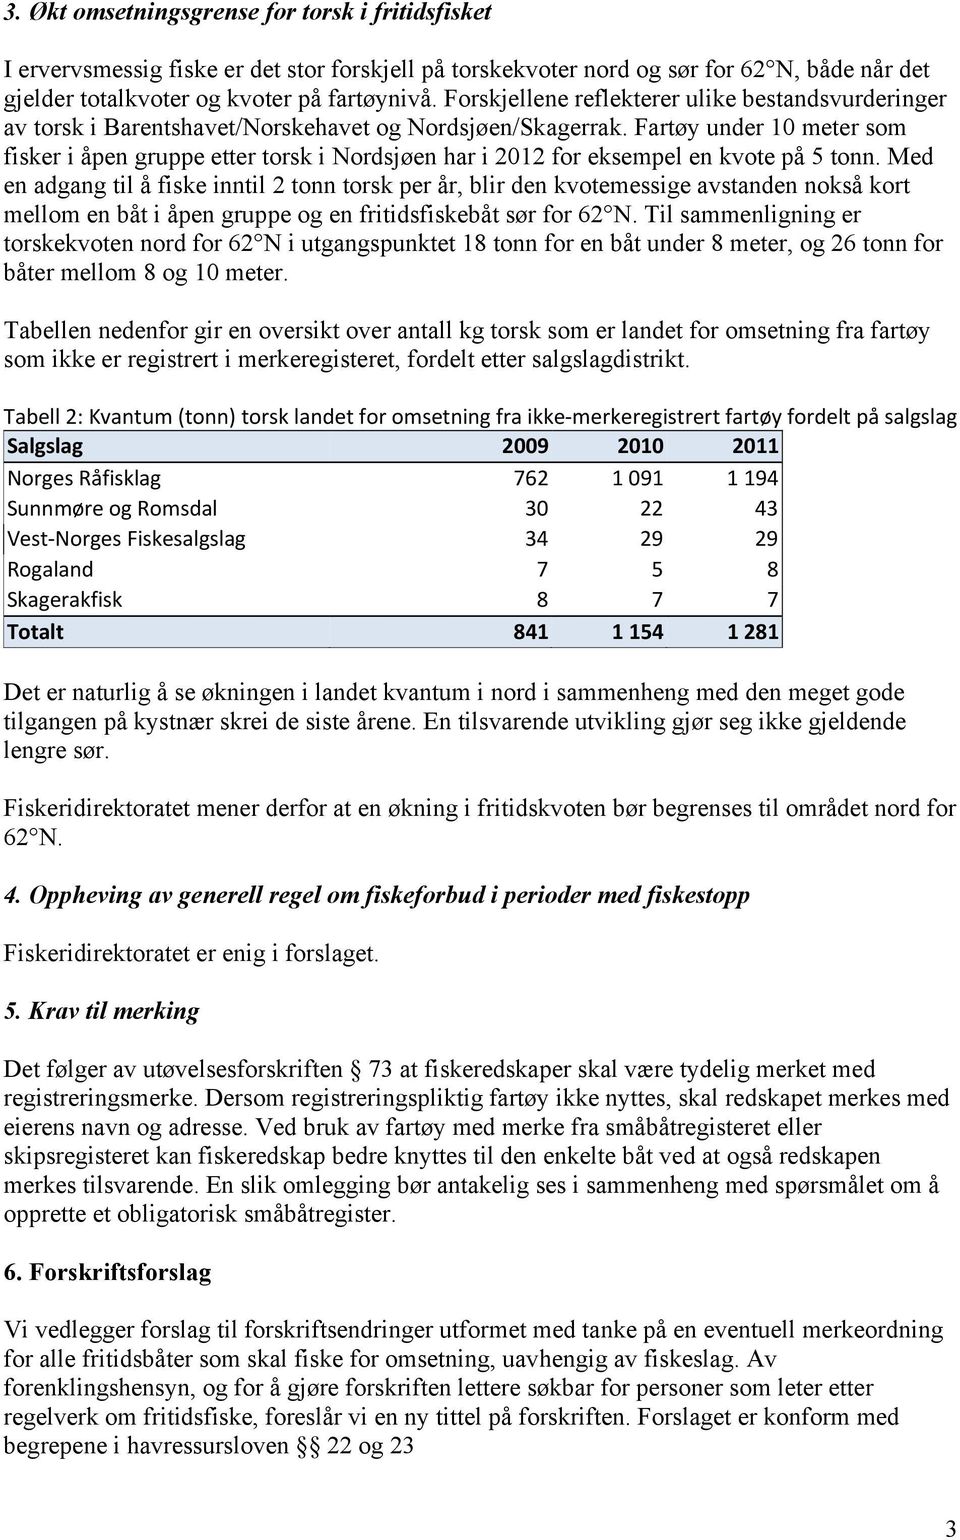 Fartøy under 10 meter som fisker i åpen gruppe etter torsk i Nordsjøen har i 2012 for eksempel en kvote på 5 tonn.